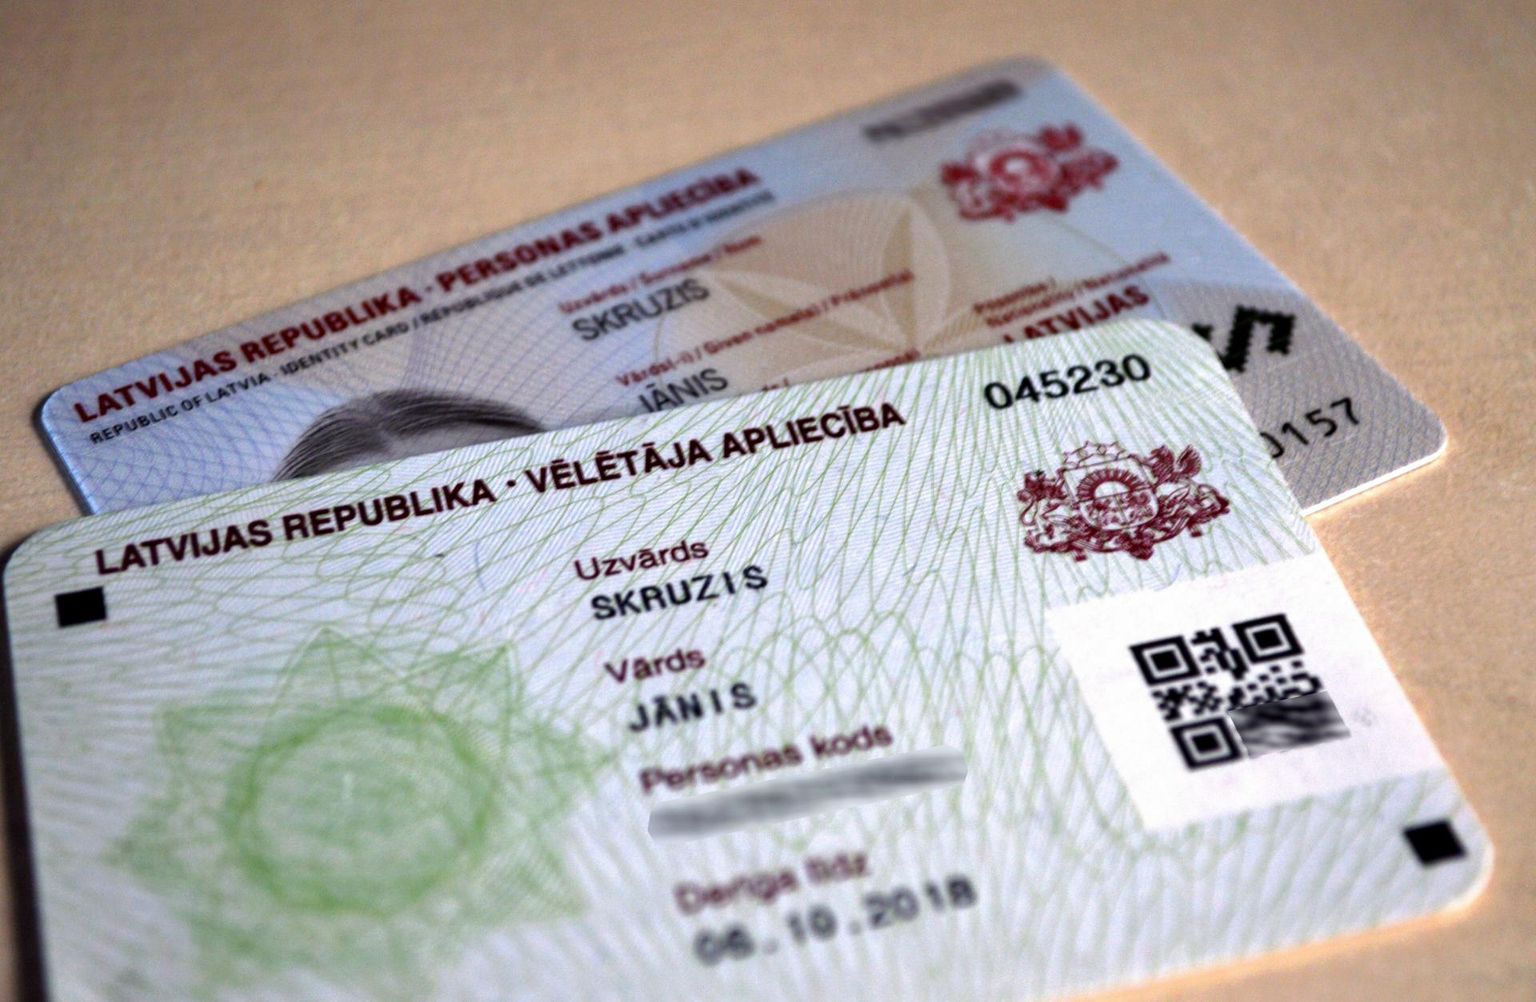 Läti ID-kaart. 